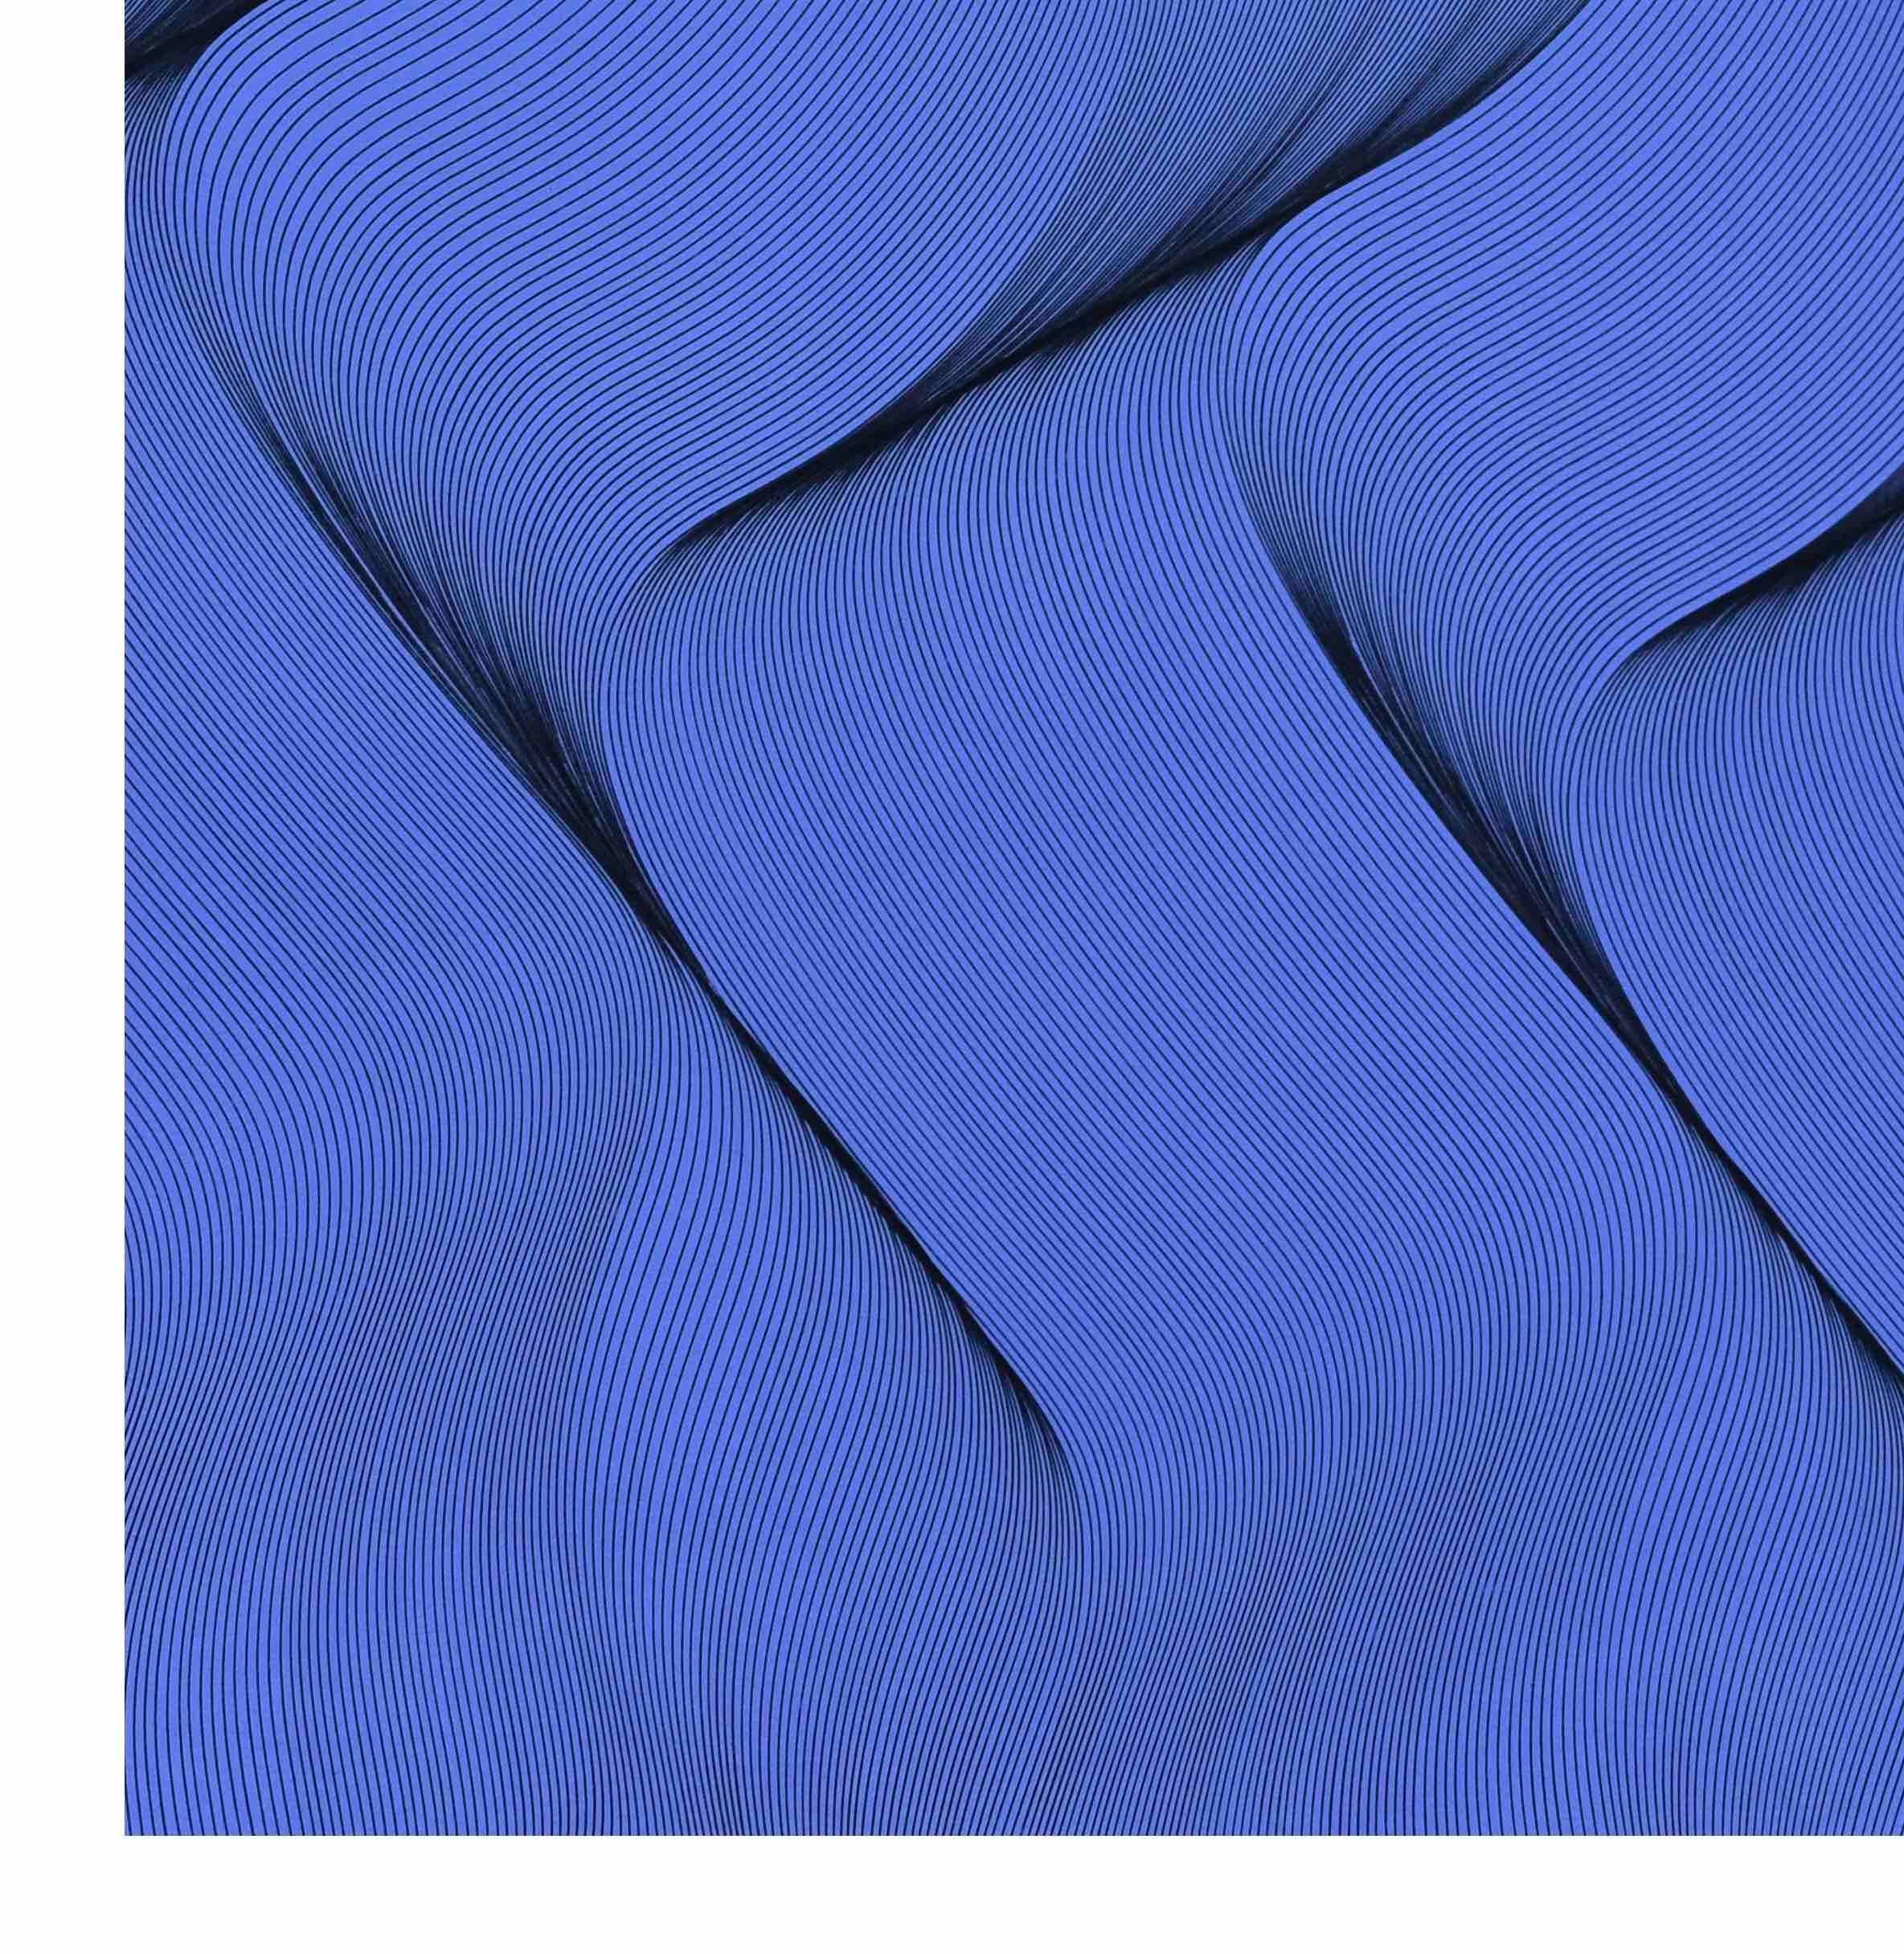 Bewegung in Blau – abstraktes Gemälde (Geometrische Abstraktion), Painting, von Roberto Lucchetta